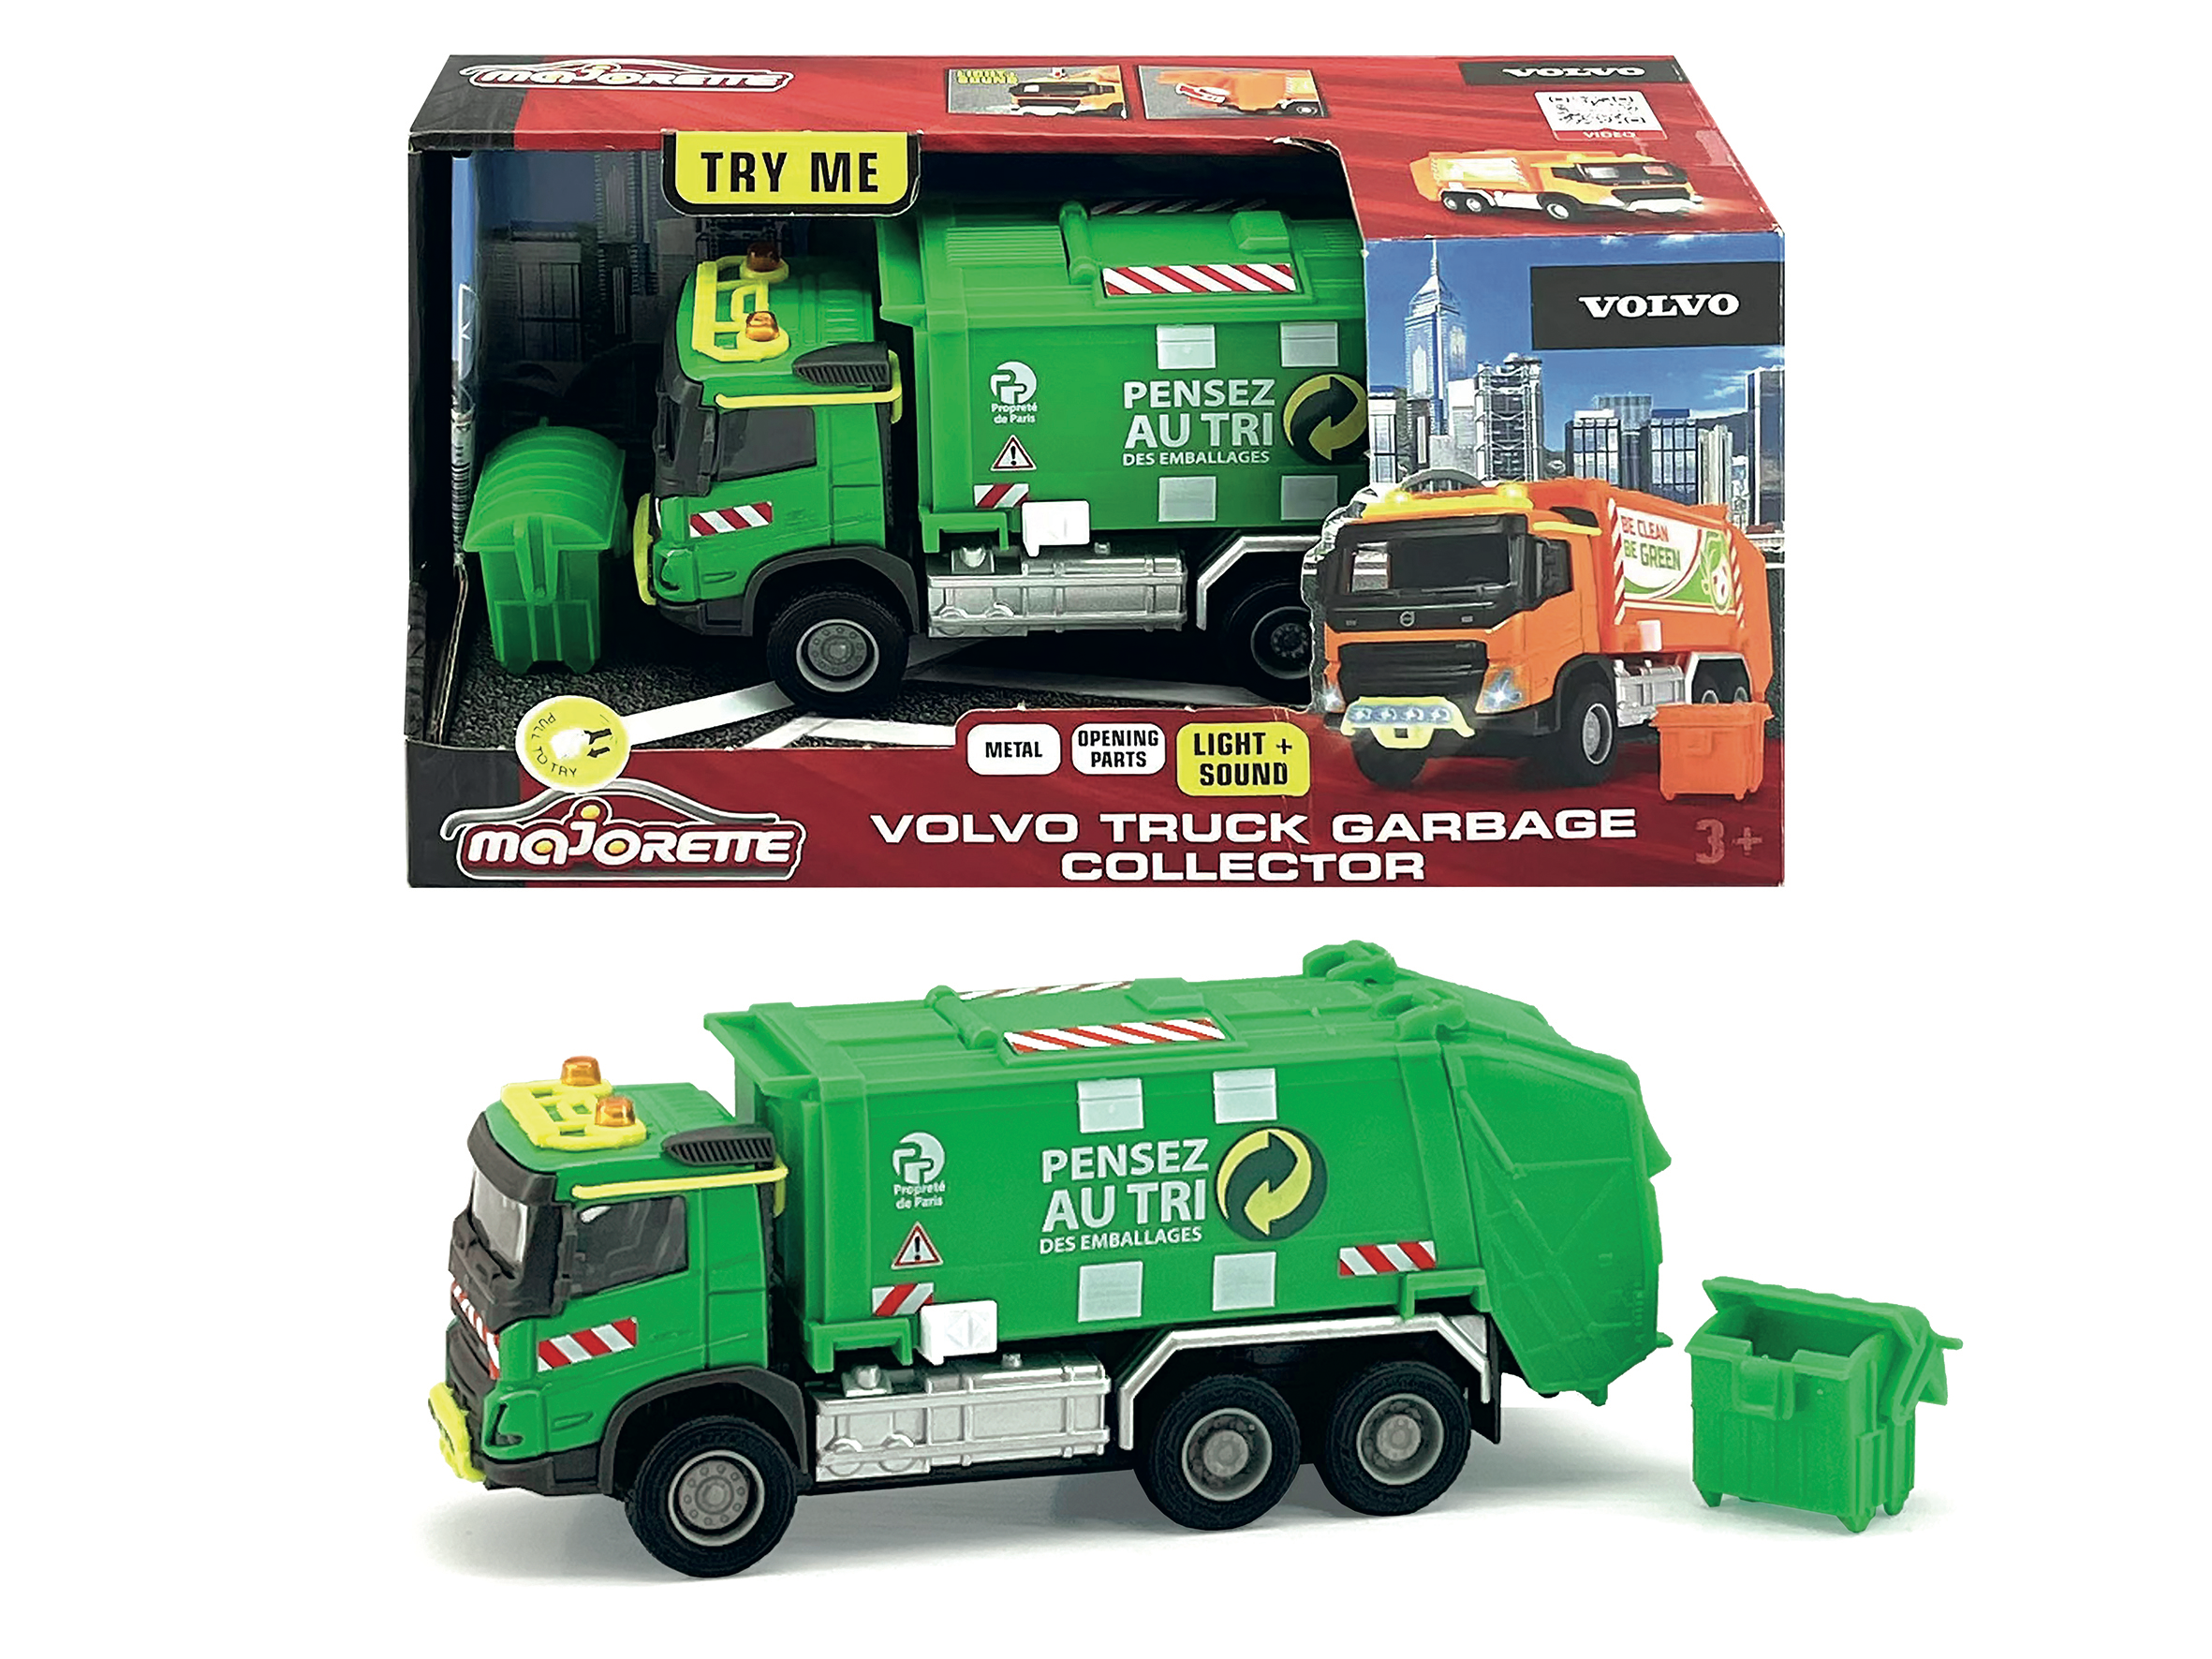 Dickie Toys Machine de travail - Camion poubelle - Lumière/Son